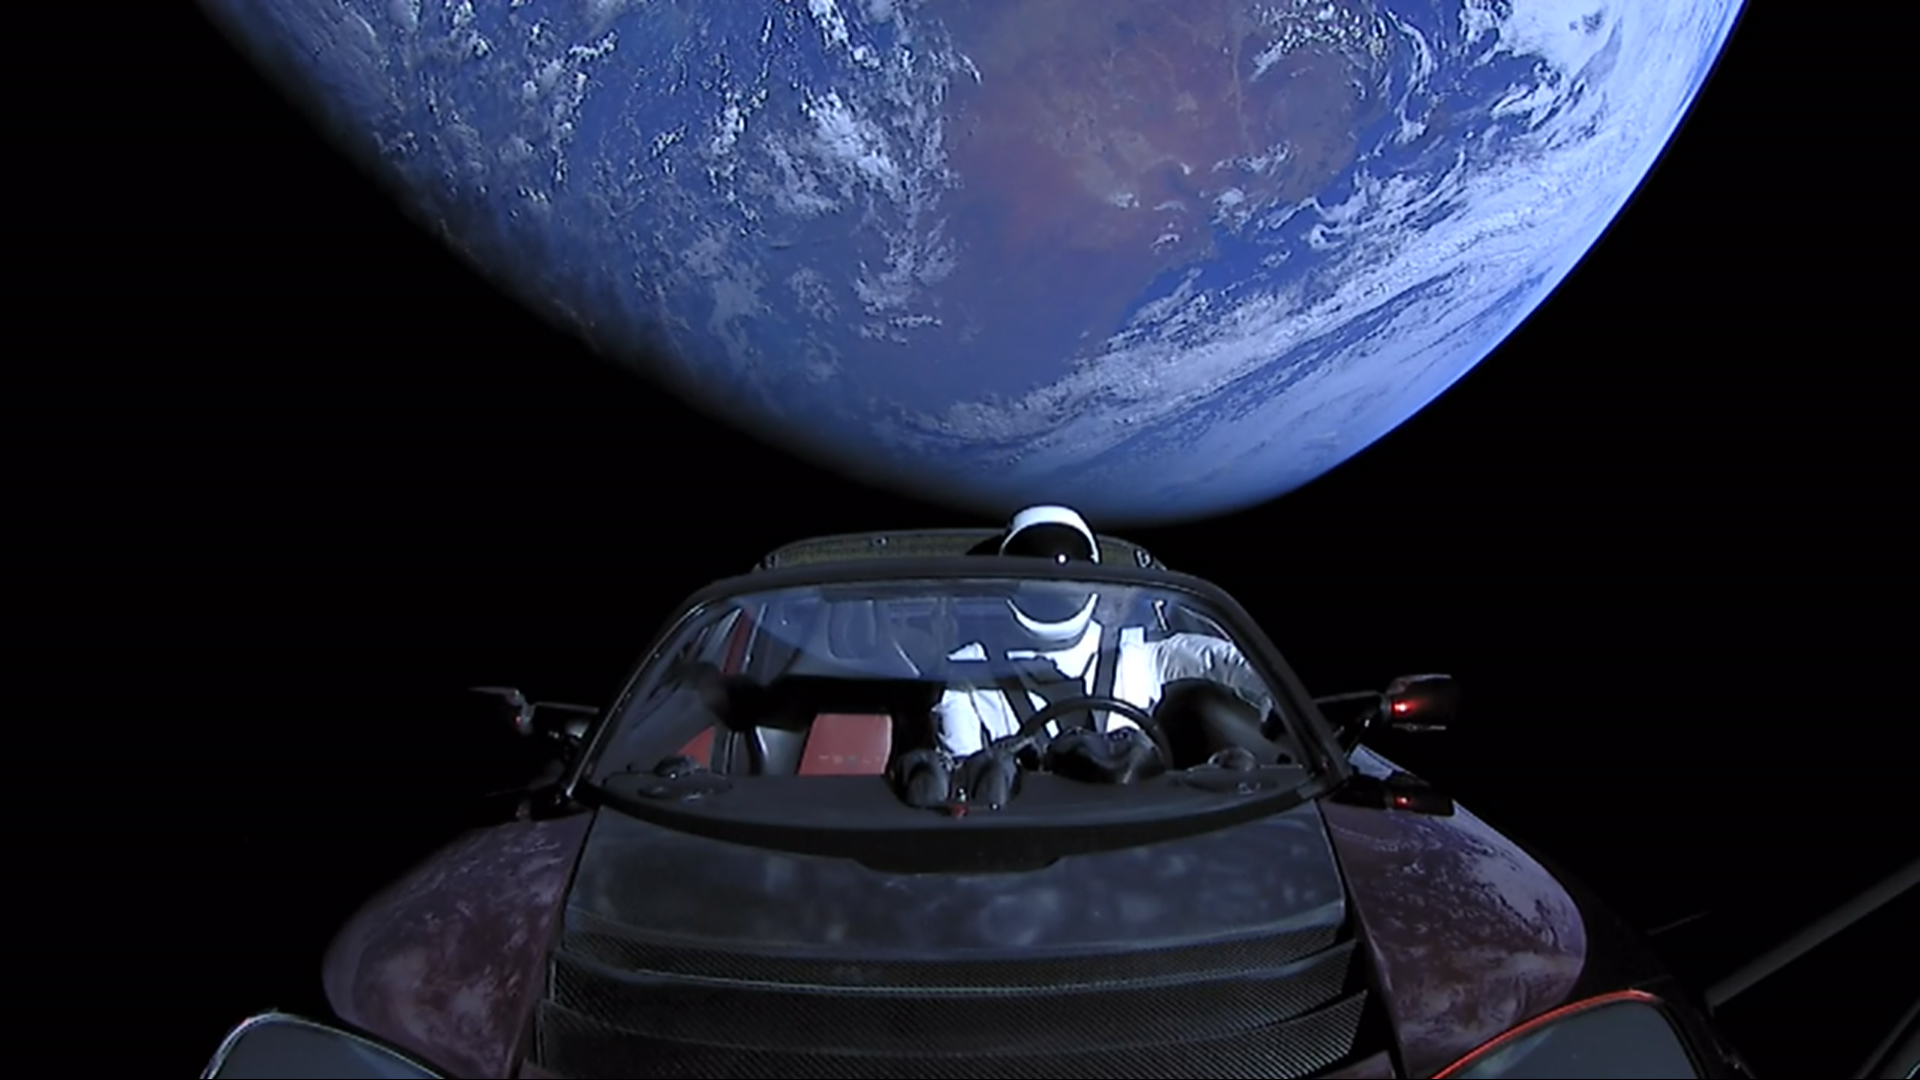 El Tesla Roadster lleva 5 años volando en el espacio: ha recorrido más de 4.000 millones de kilómetros, ha dado 3,5 vueltas al Sol y ahora está en órbita alrededor de Marte.